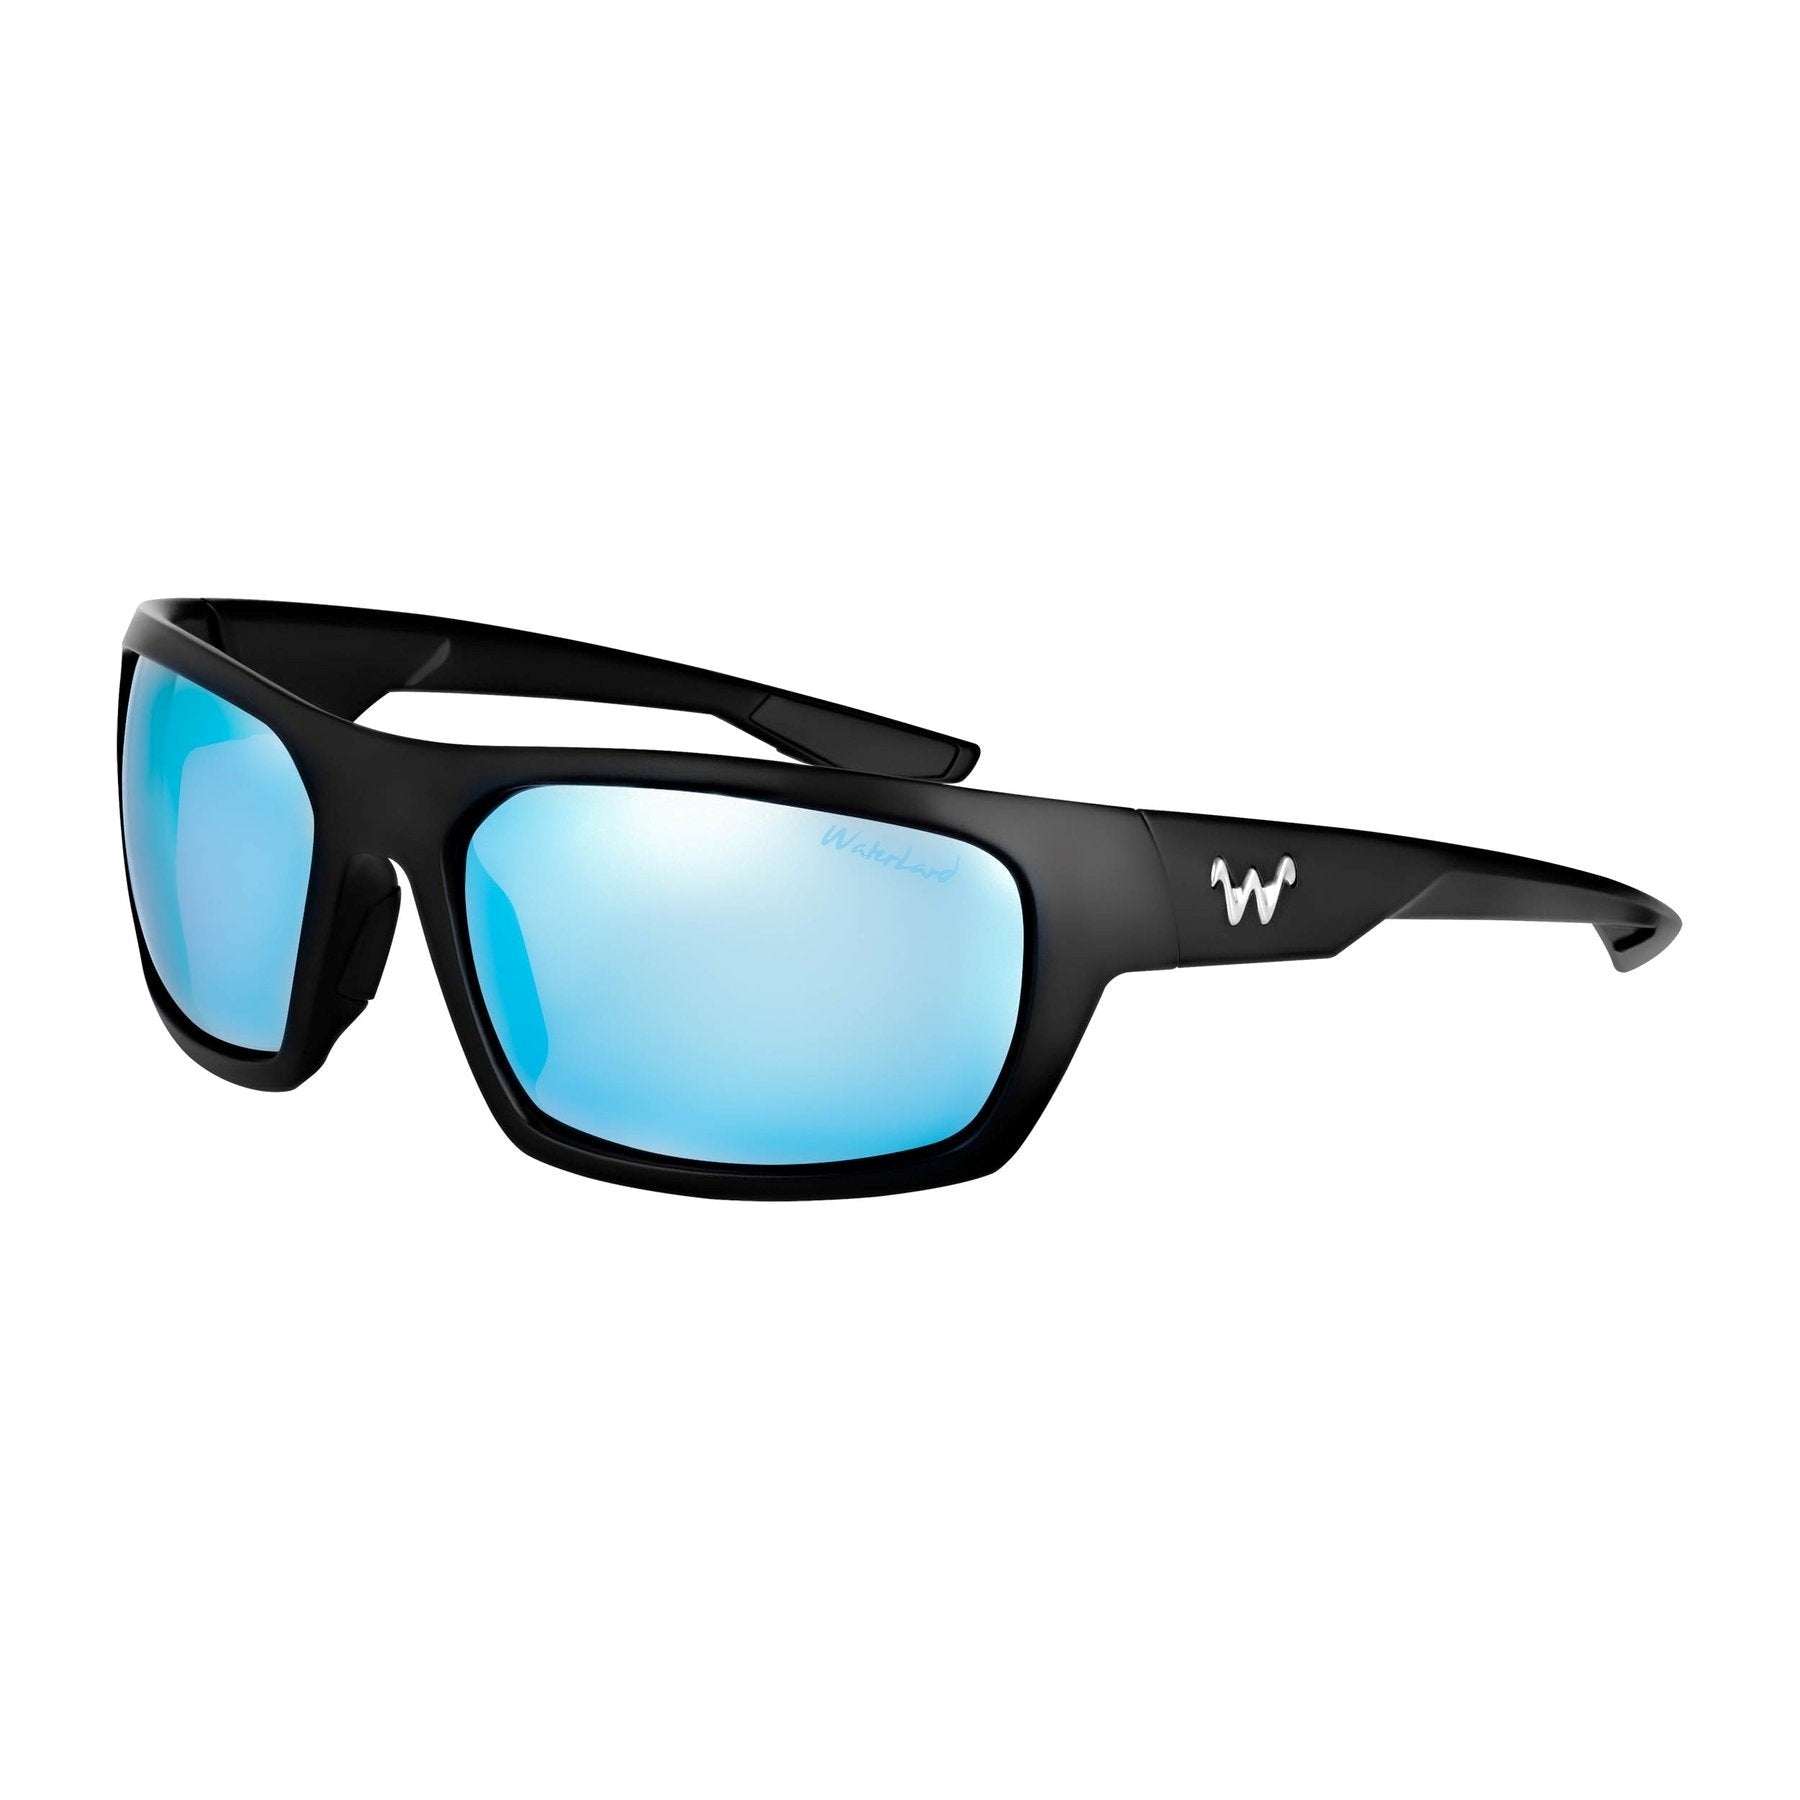 Waterland Milliken Polarized Sunglasses